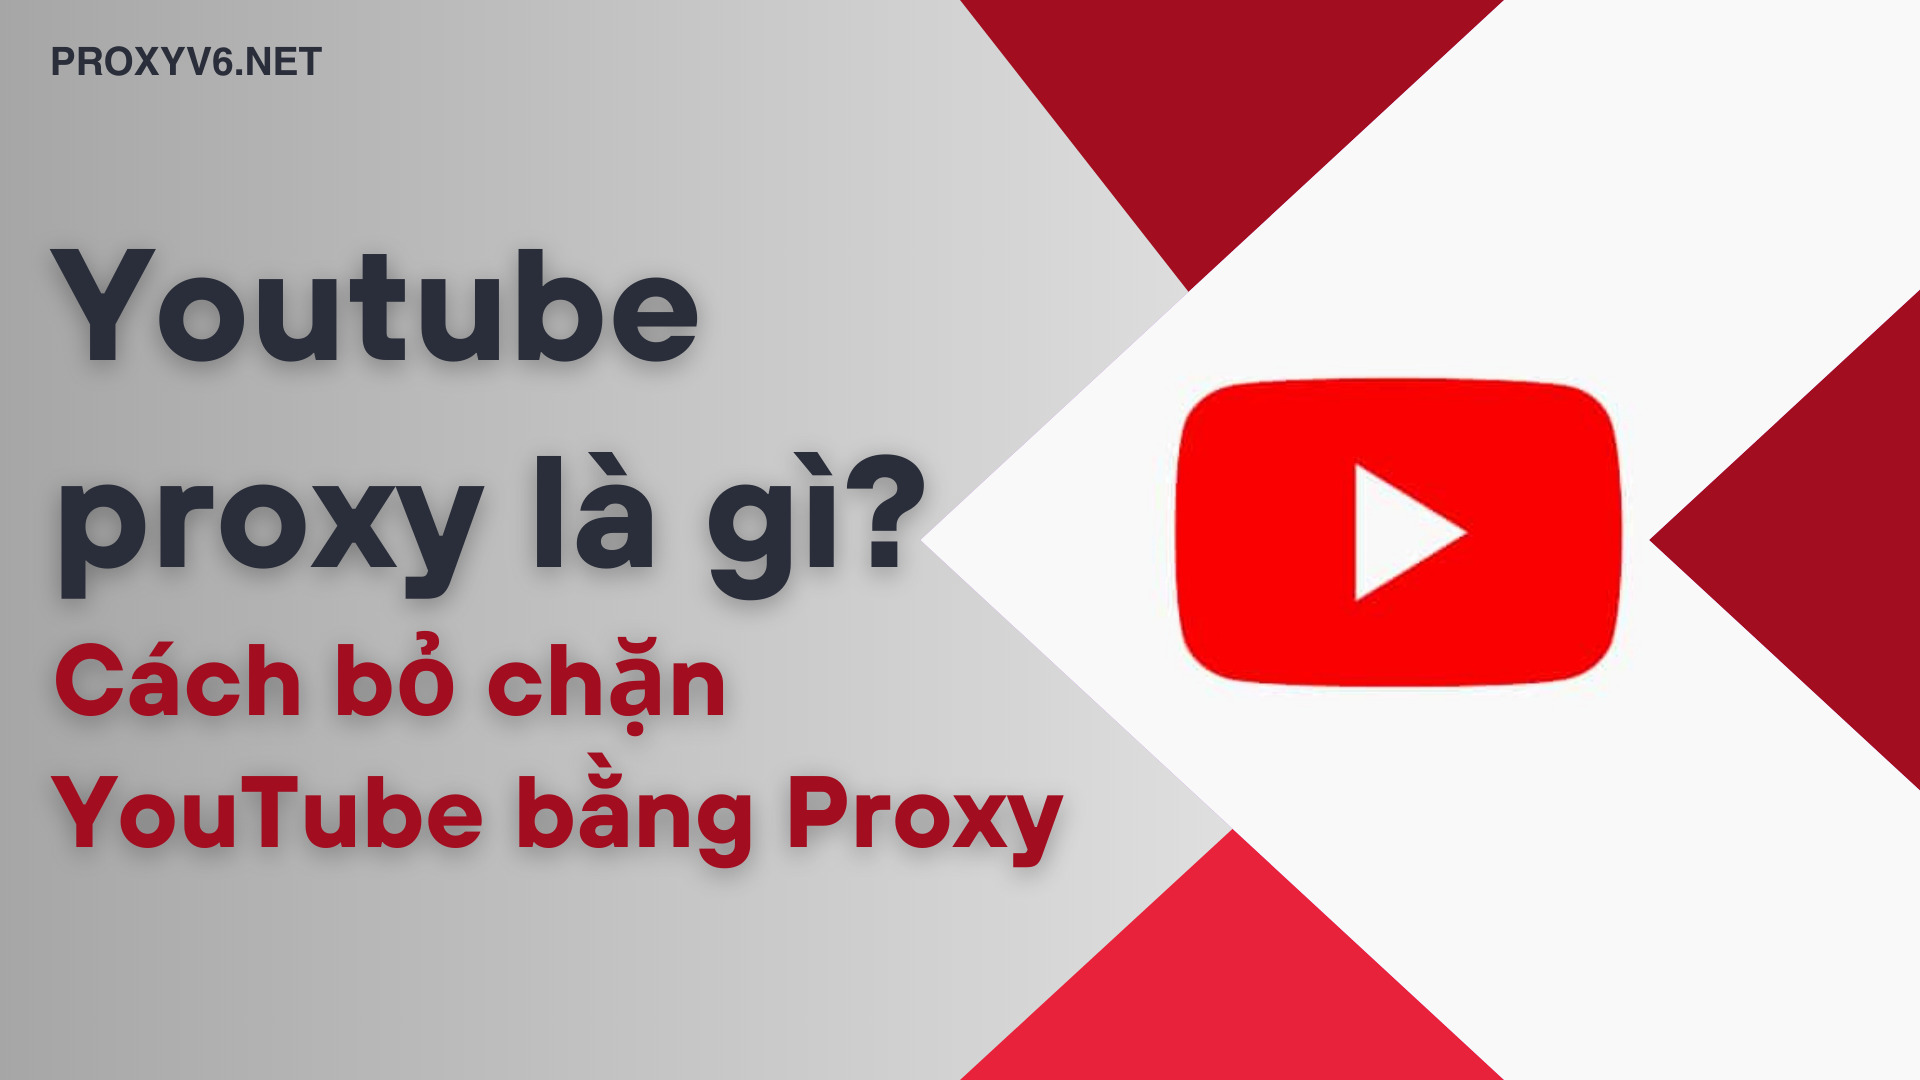 YouTube Proxy là gì? Cách bỏ chặn YouTube bằng Proxy